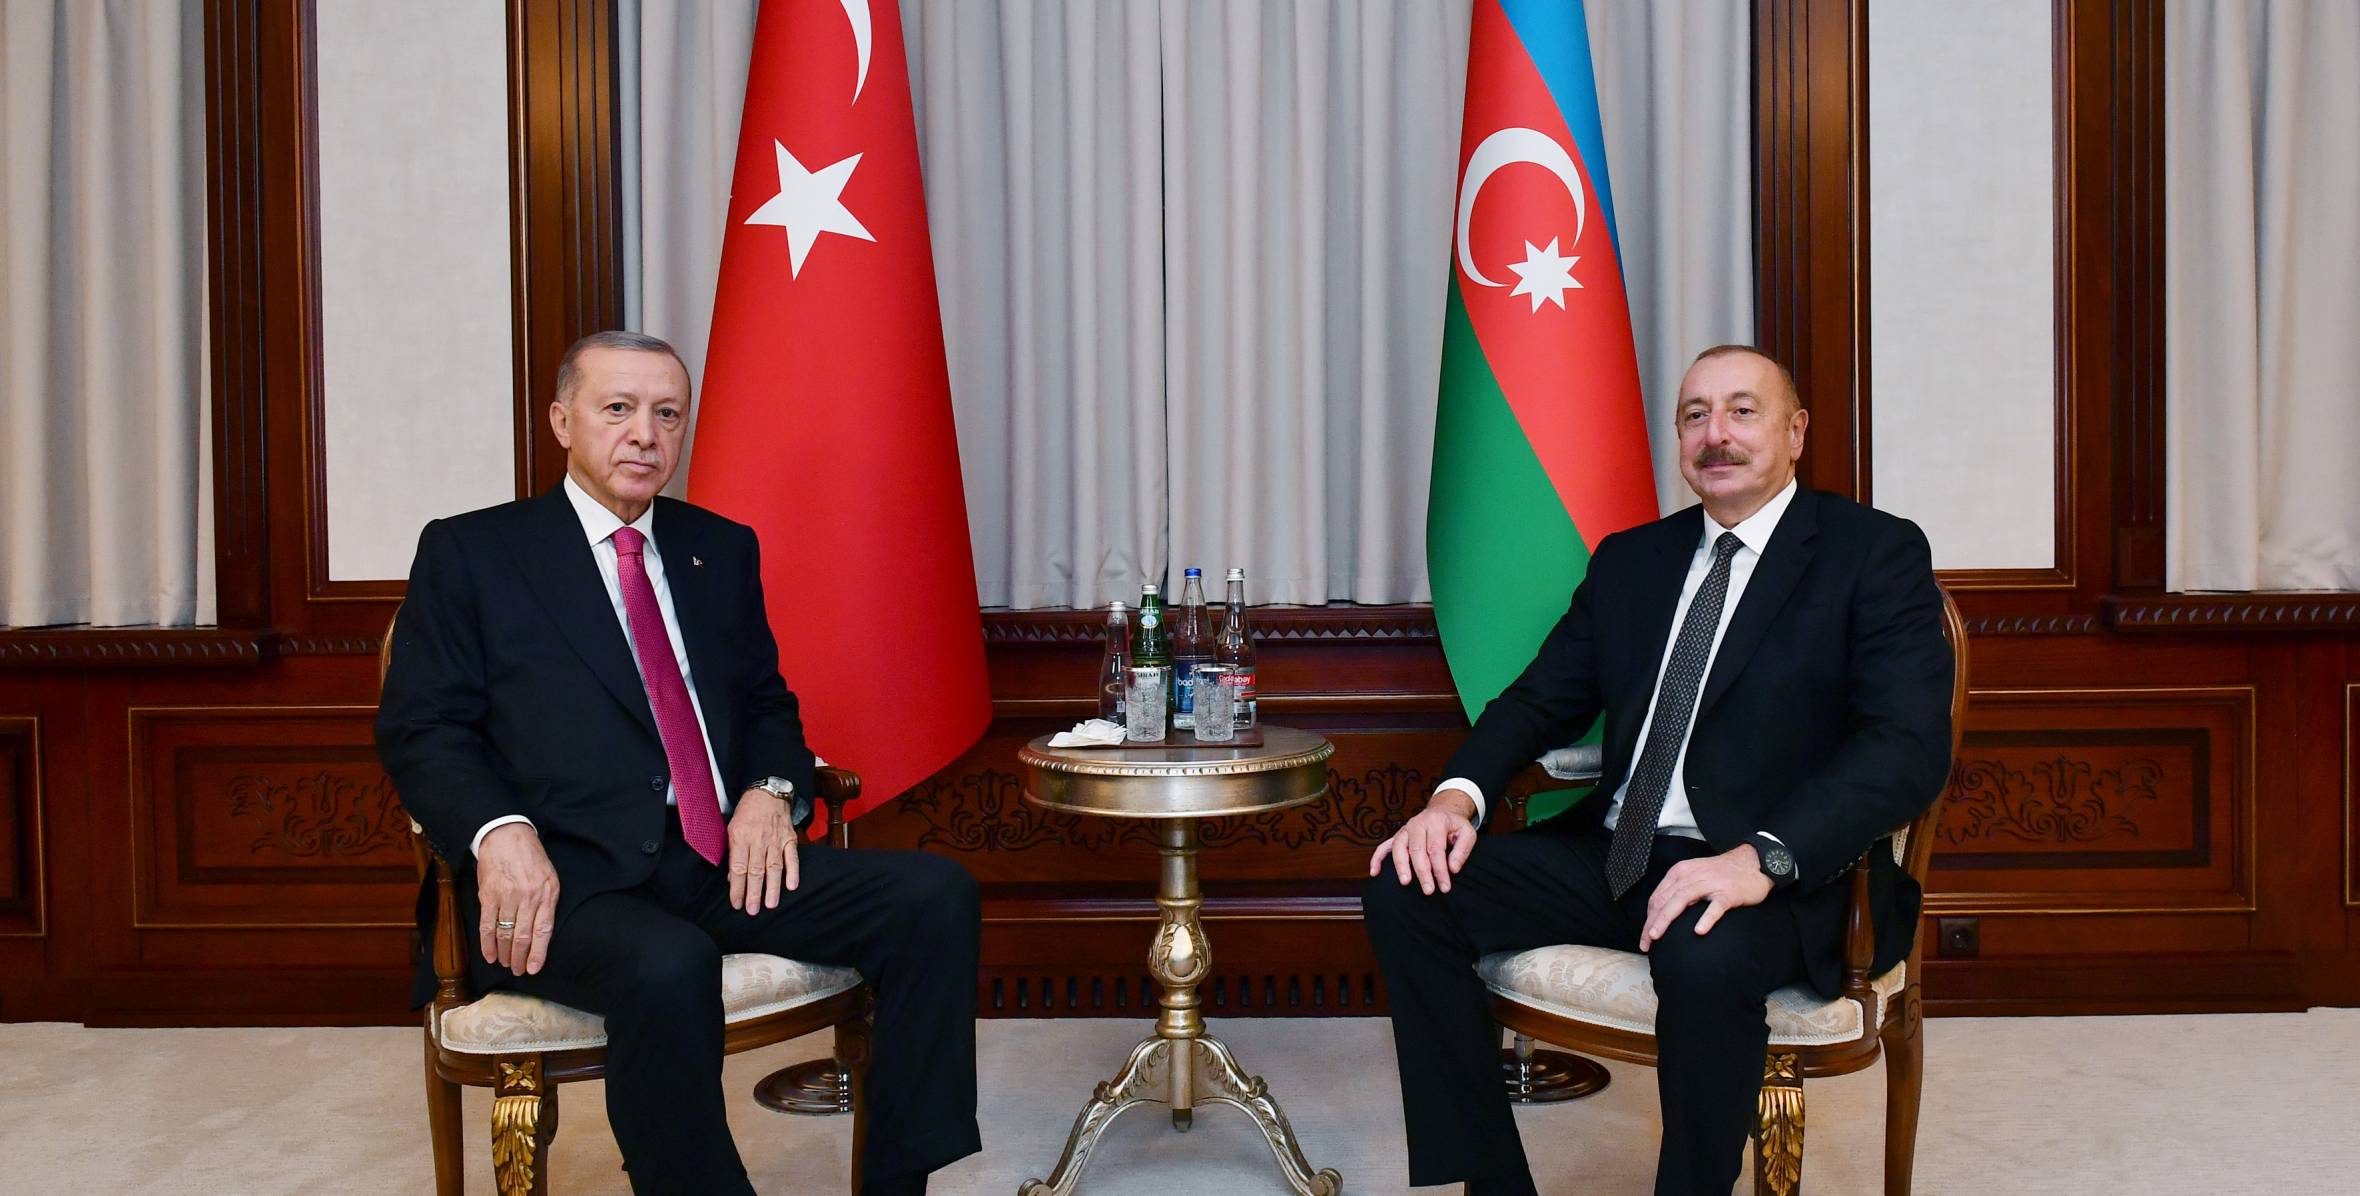 В Нахчыване состоялась встреча Ильхама Алиева и Президента Турции Реджепа Тайипа Эрдогана один на один